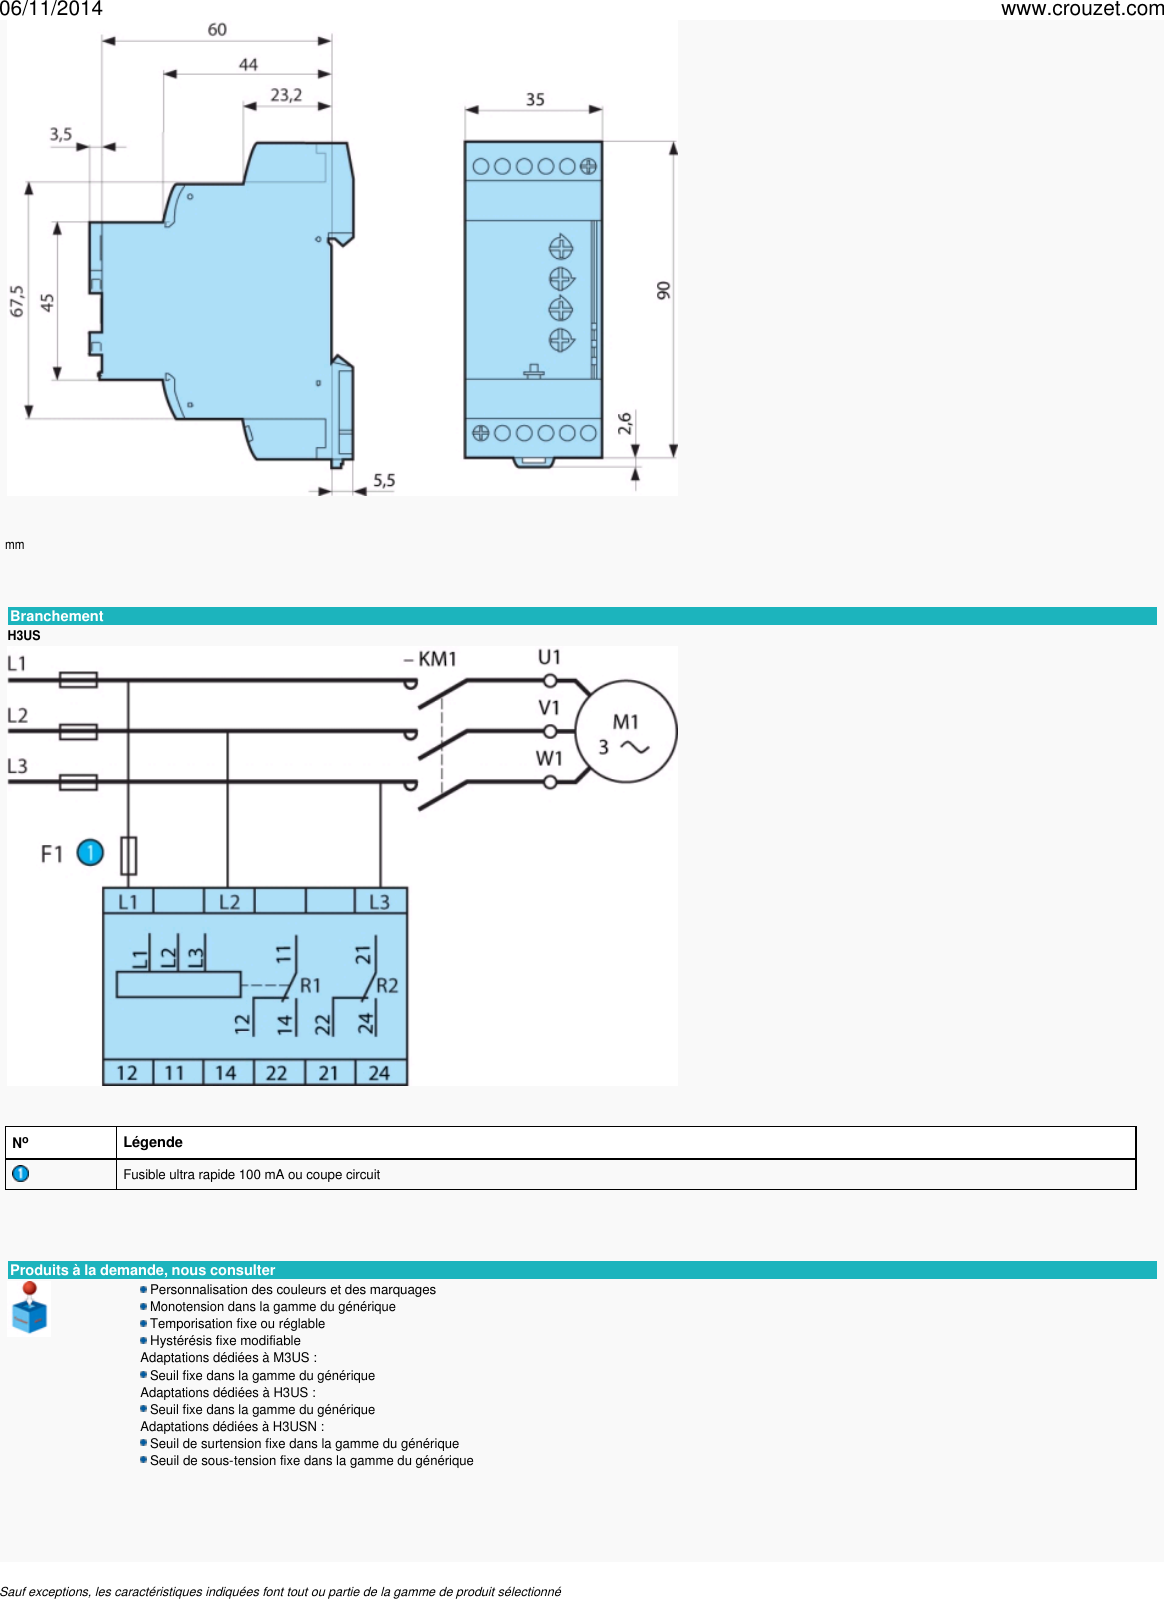 Page 4 of 4 - Relais-de-controle-controle-de-phase-montage-rail-din-controle-de-tension-triphasee-17-5-mm-35-mm-h3us-Ref-84873220